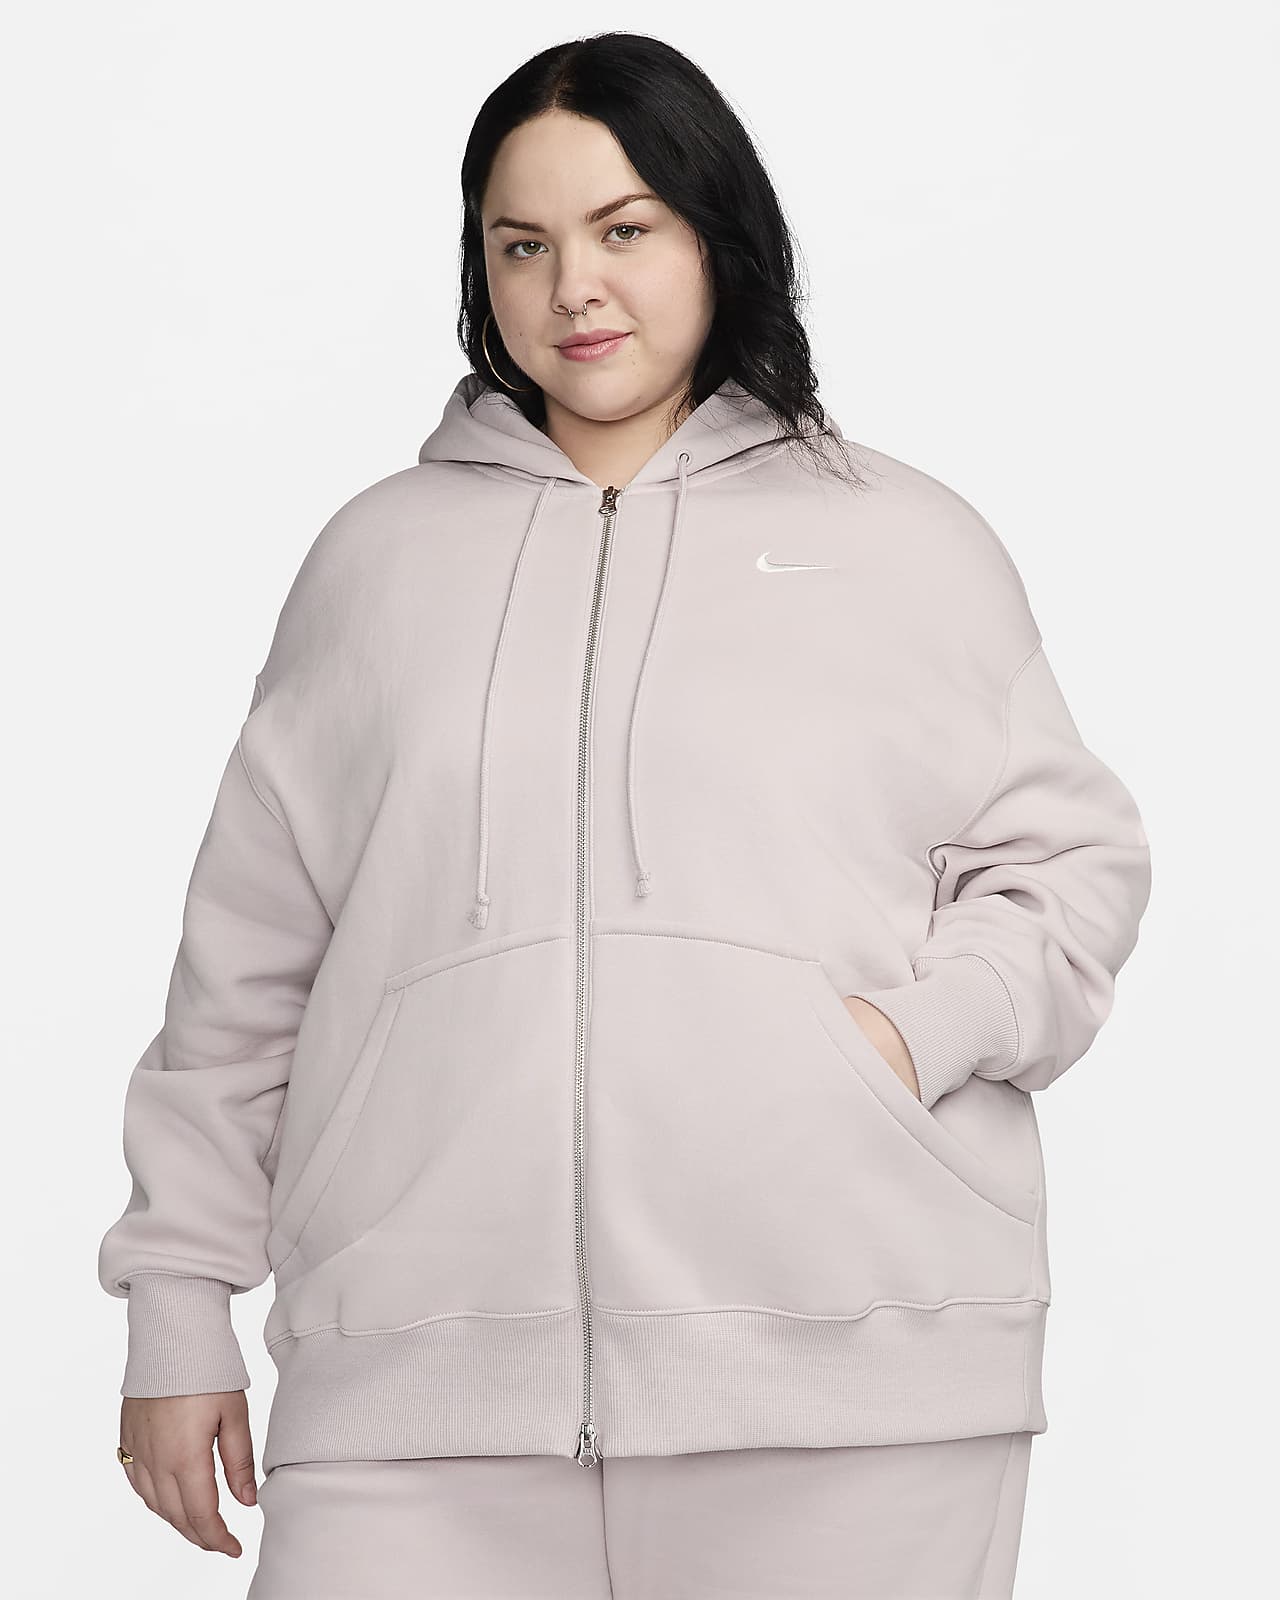 Γυναικεία μπλούζα με κουκούλα και φερμουάρ σε όλο το μήκος σε φαρδιά γραμμή Nike Sportswear Phoenix Fleece (μεγάλα μεγέθη)